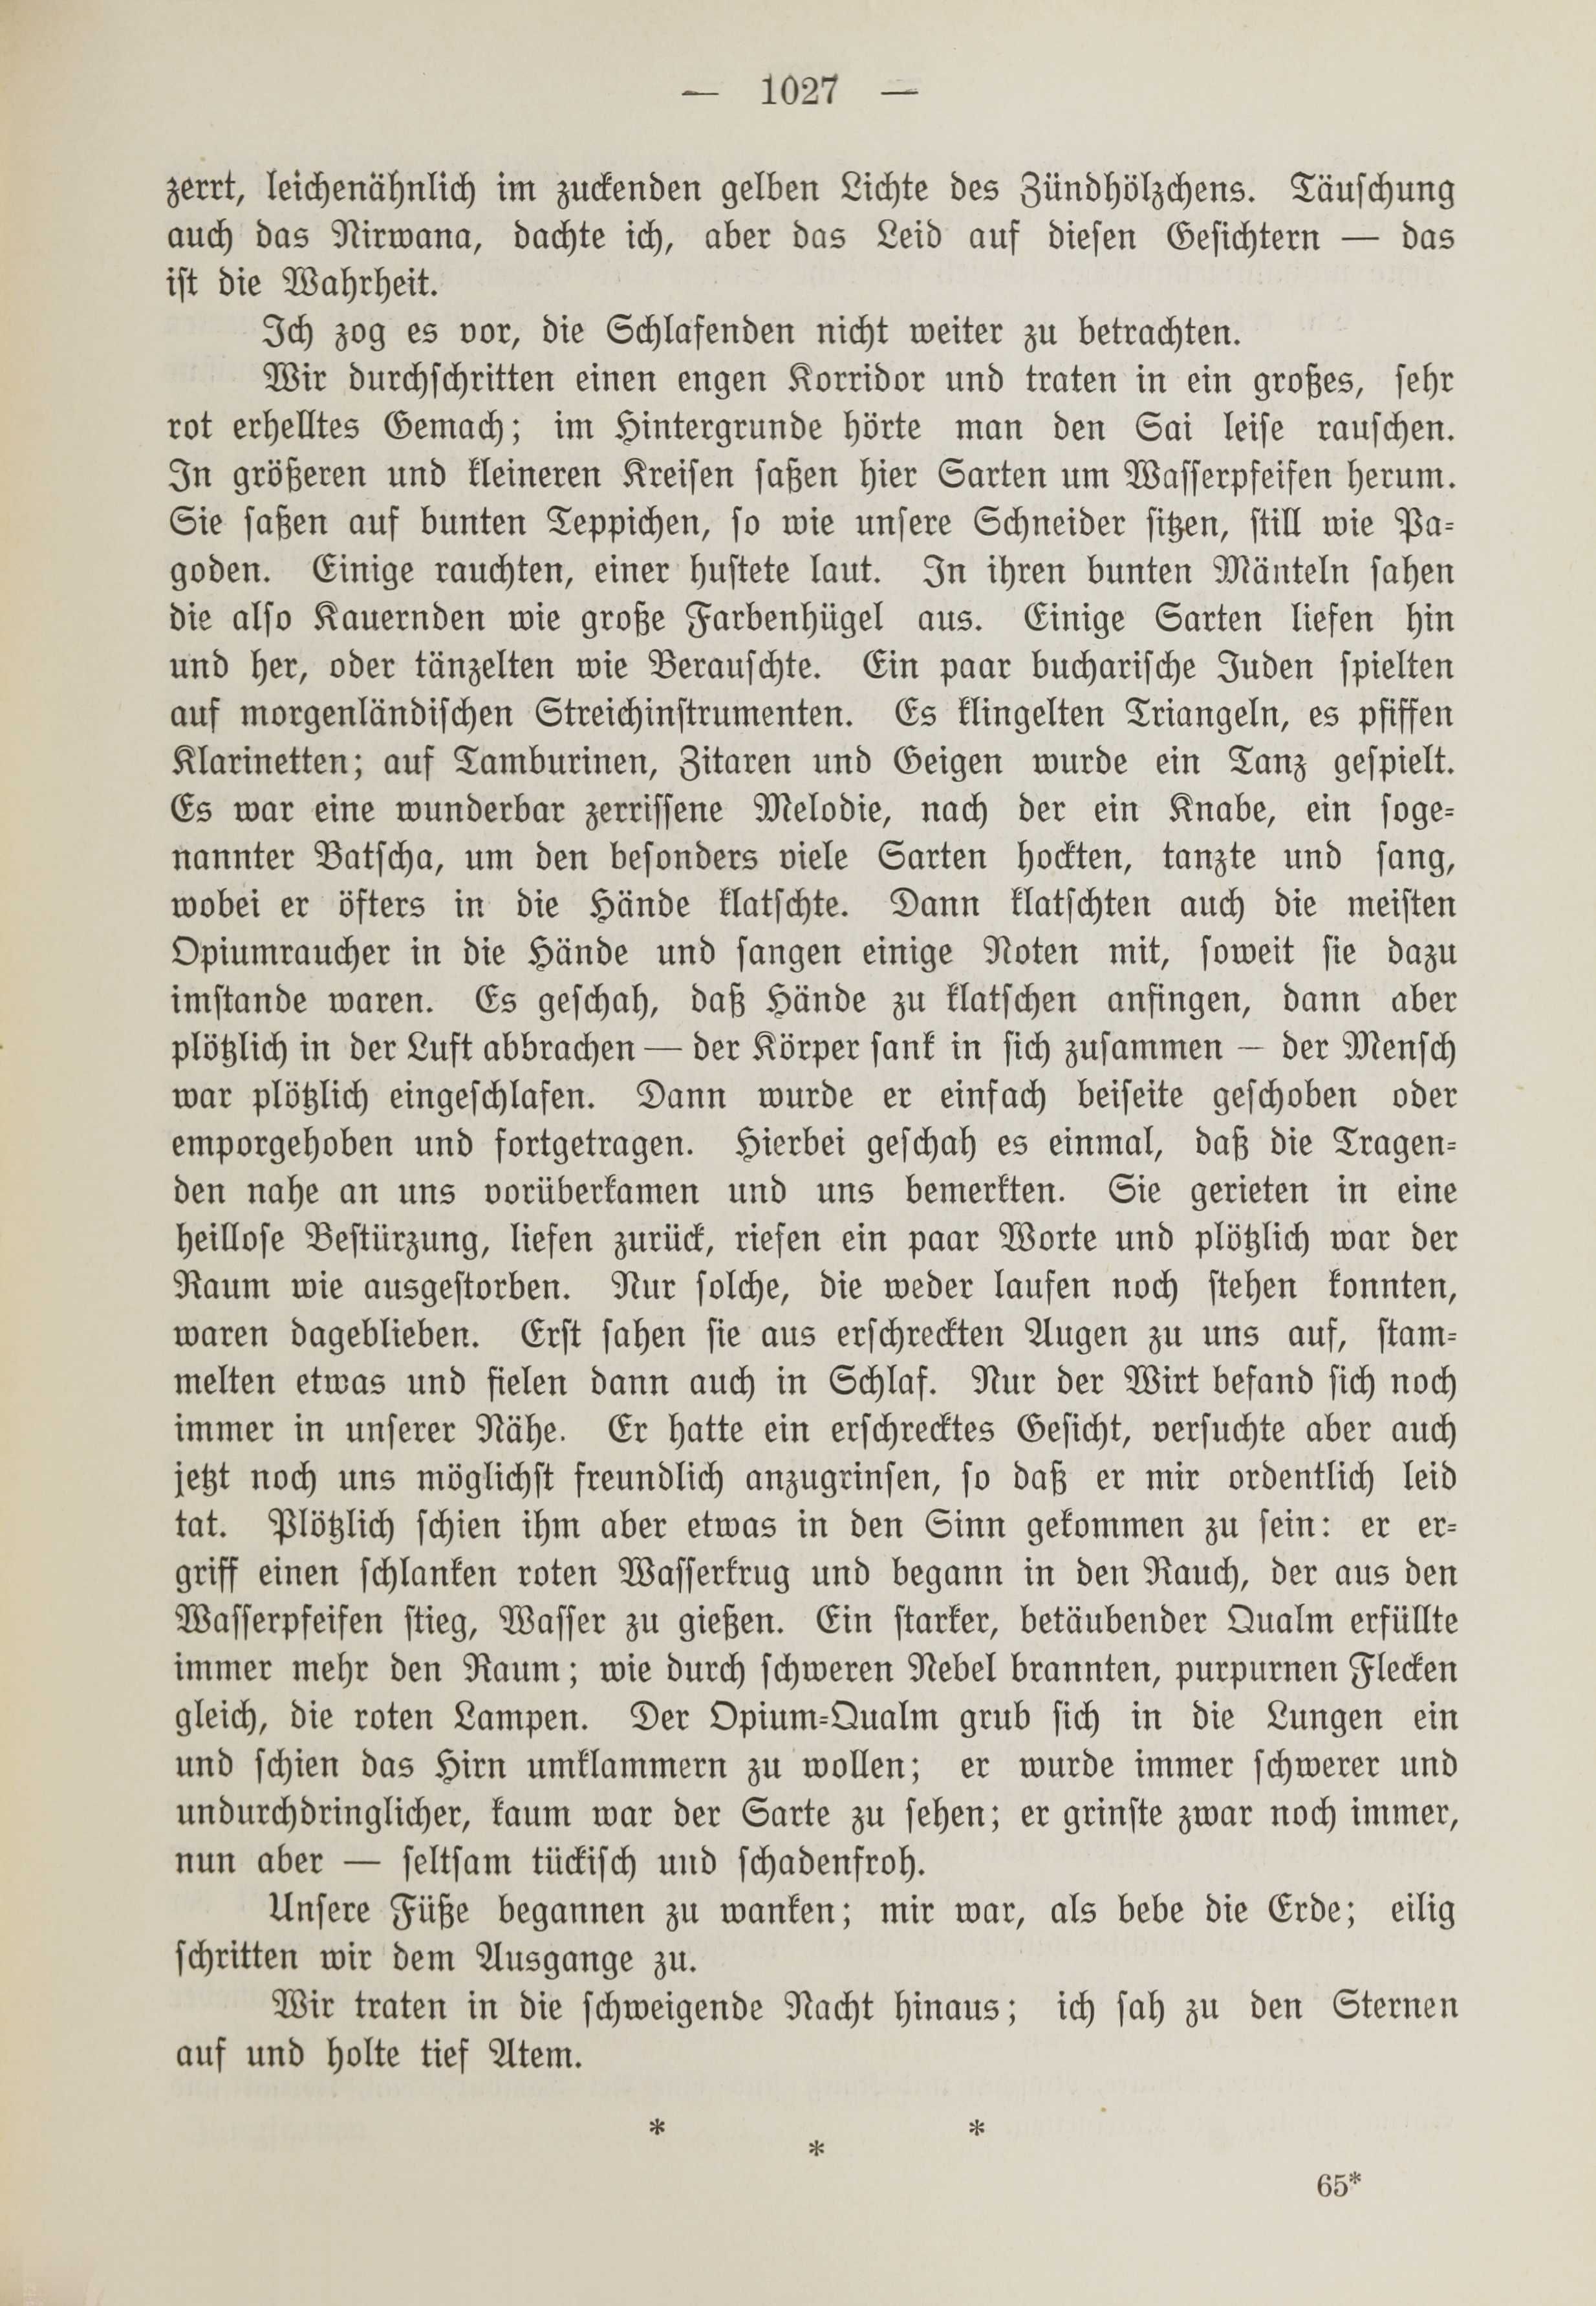 Deutsche Monatsschrift für Russland [1] (1912) | 1035. (1027) Main body of text